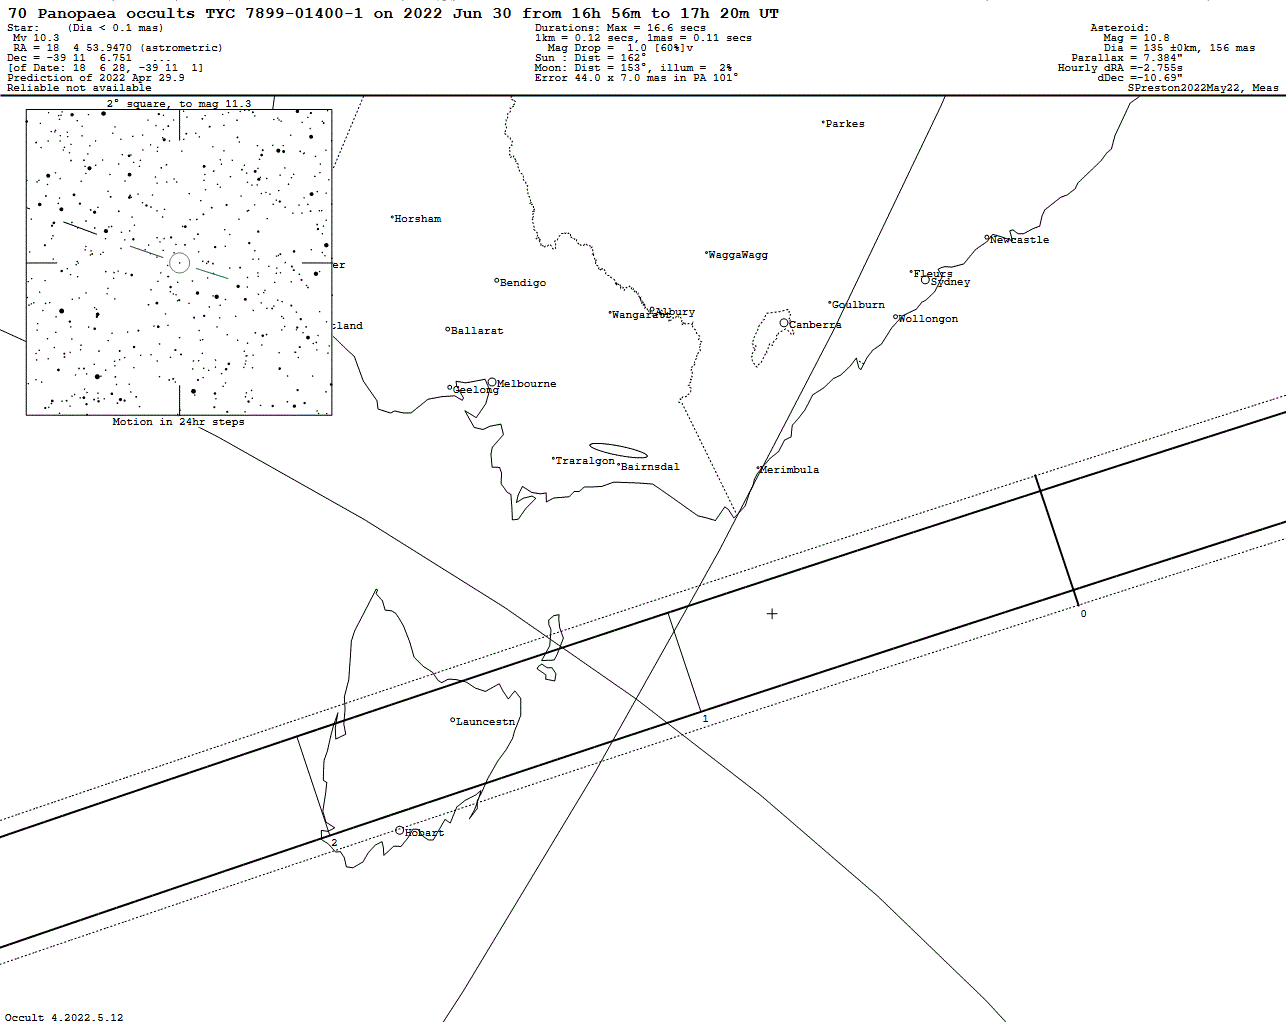 Panopaea Update Map